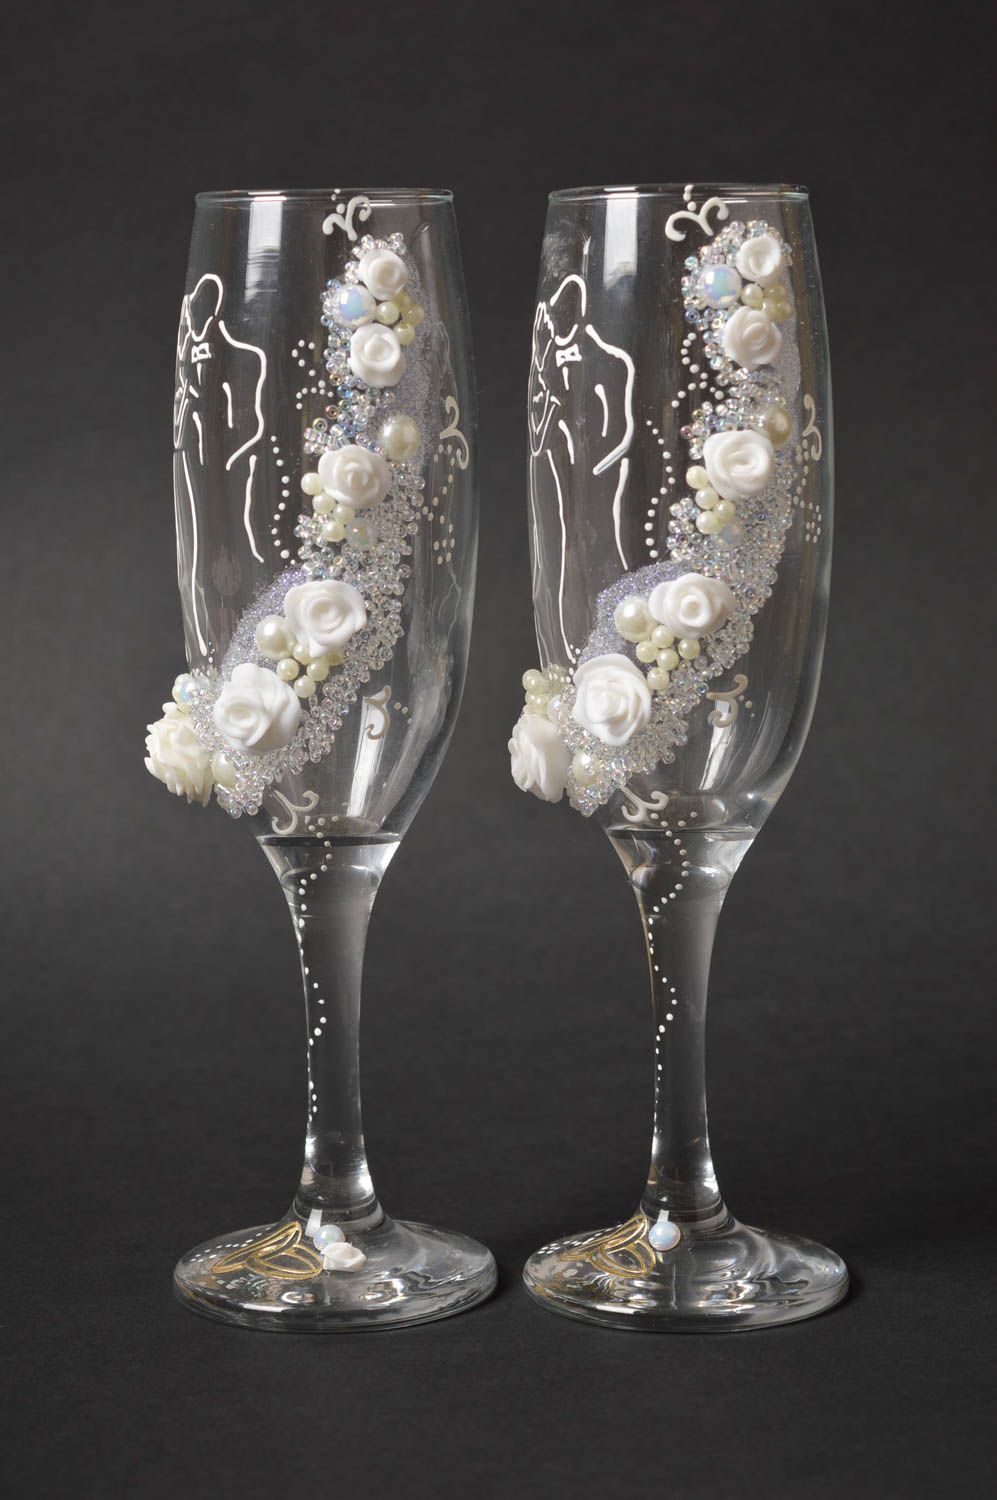 серебристые свадебные бокалы, украшенные рисунком в виде прекрасного белого лебедя №30236